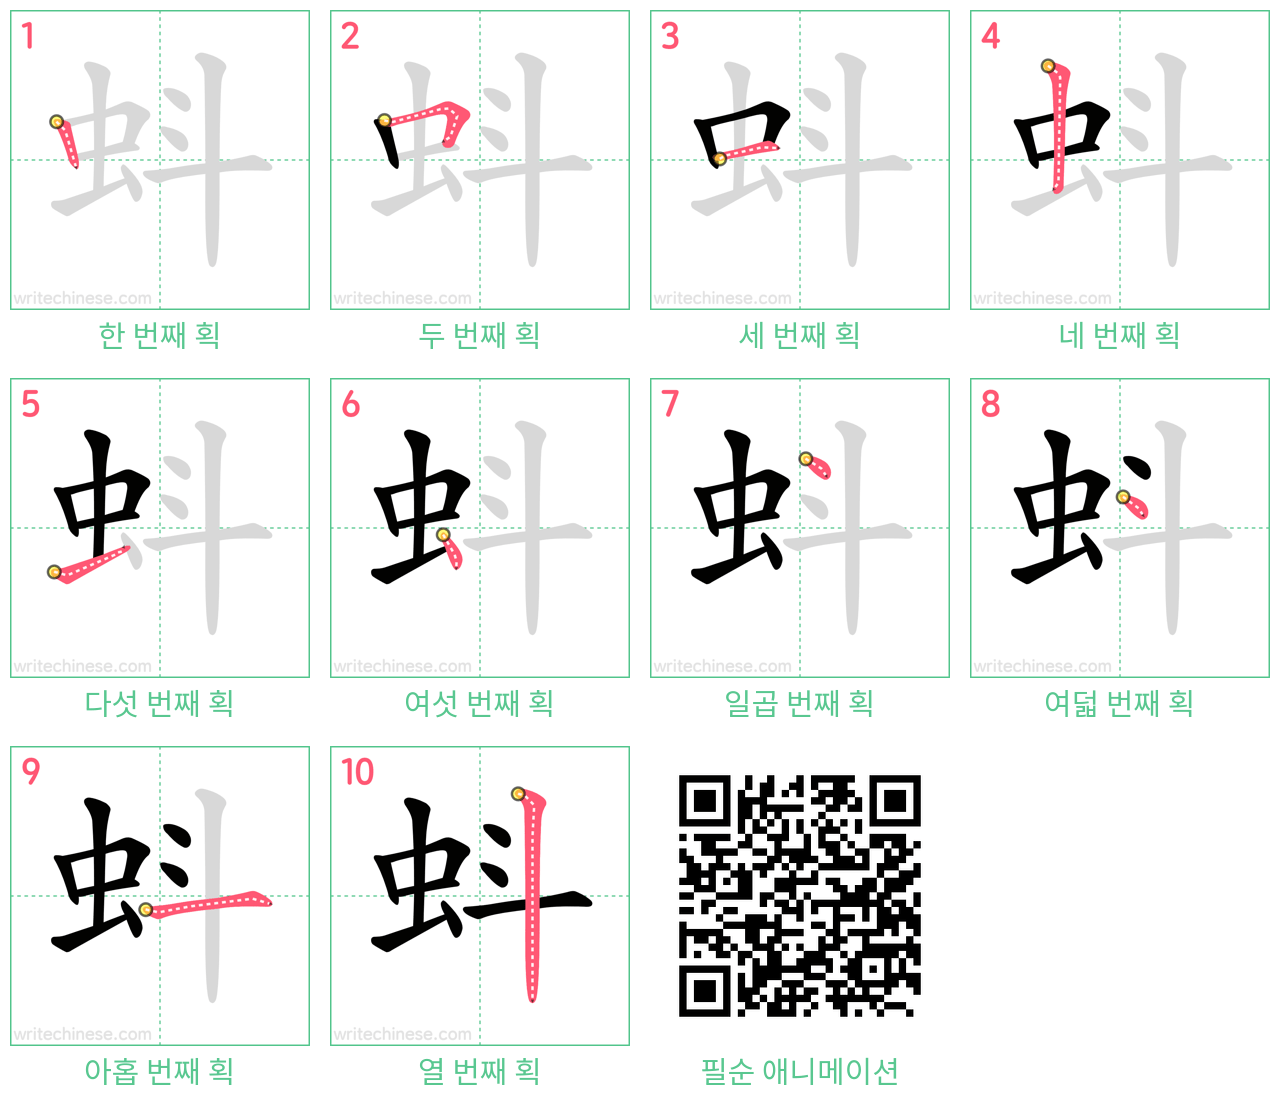 蚪 step-by-step stroke order diagrams